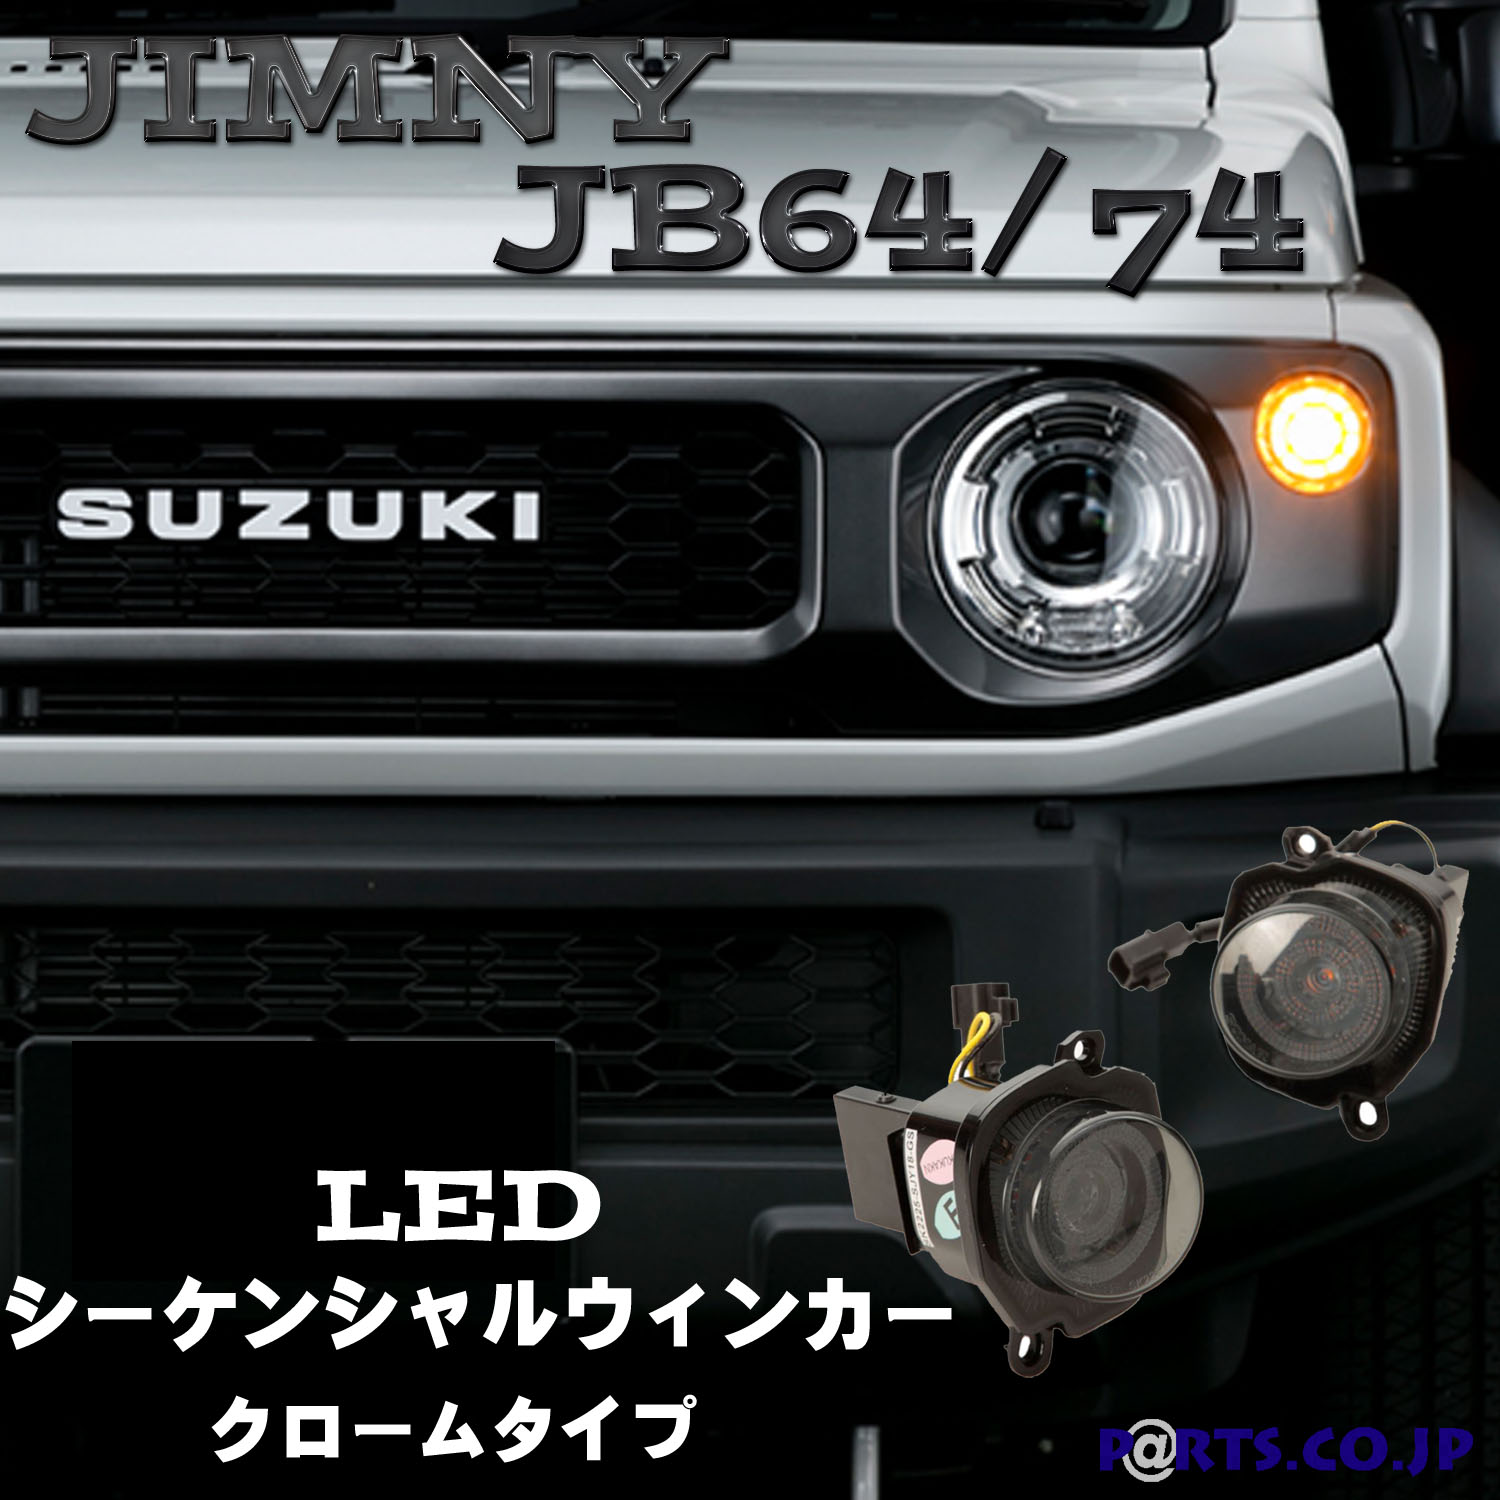 話題の行列 SONAR ソナー LEDシーケンシャルウィンカークロームジムニー JB64 74 fucoa.cl